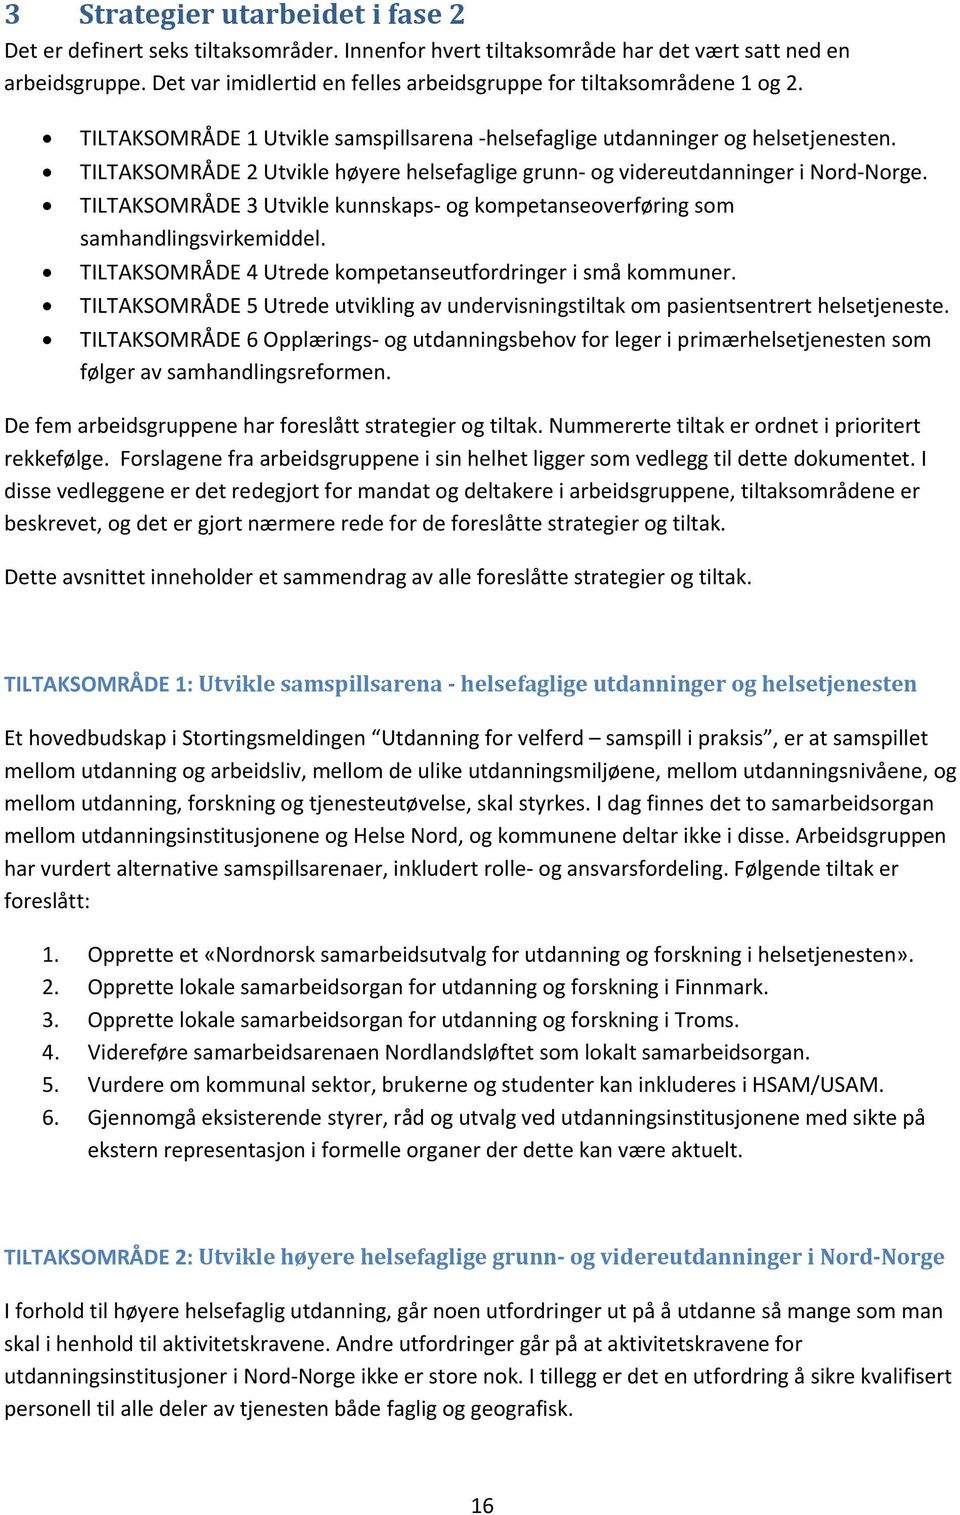 TILTAKSOMRÅDE 2 Utvikle høyere helsefaglige grunn og videreutdanninger i Nord Norge. TILTAKSOMRÅDE 3 Utvikle kunnskaps og kompetanseoverføring som samhandlingsvirkemiddel.